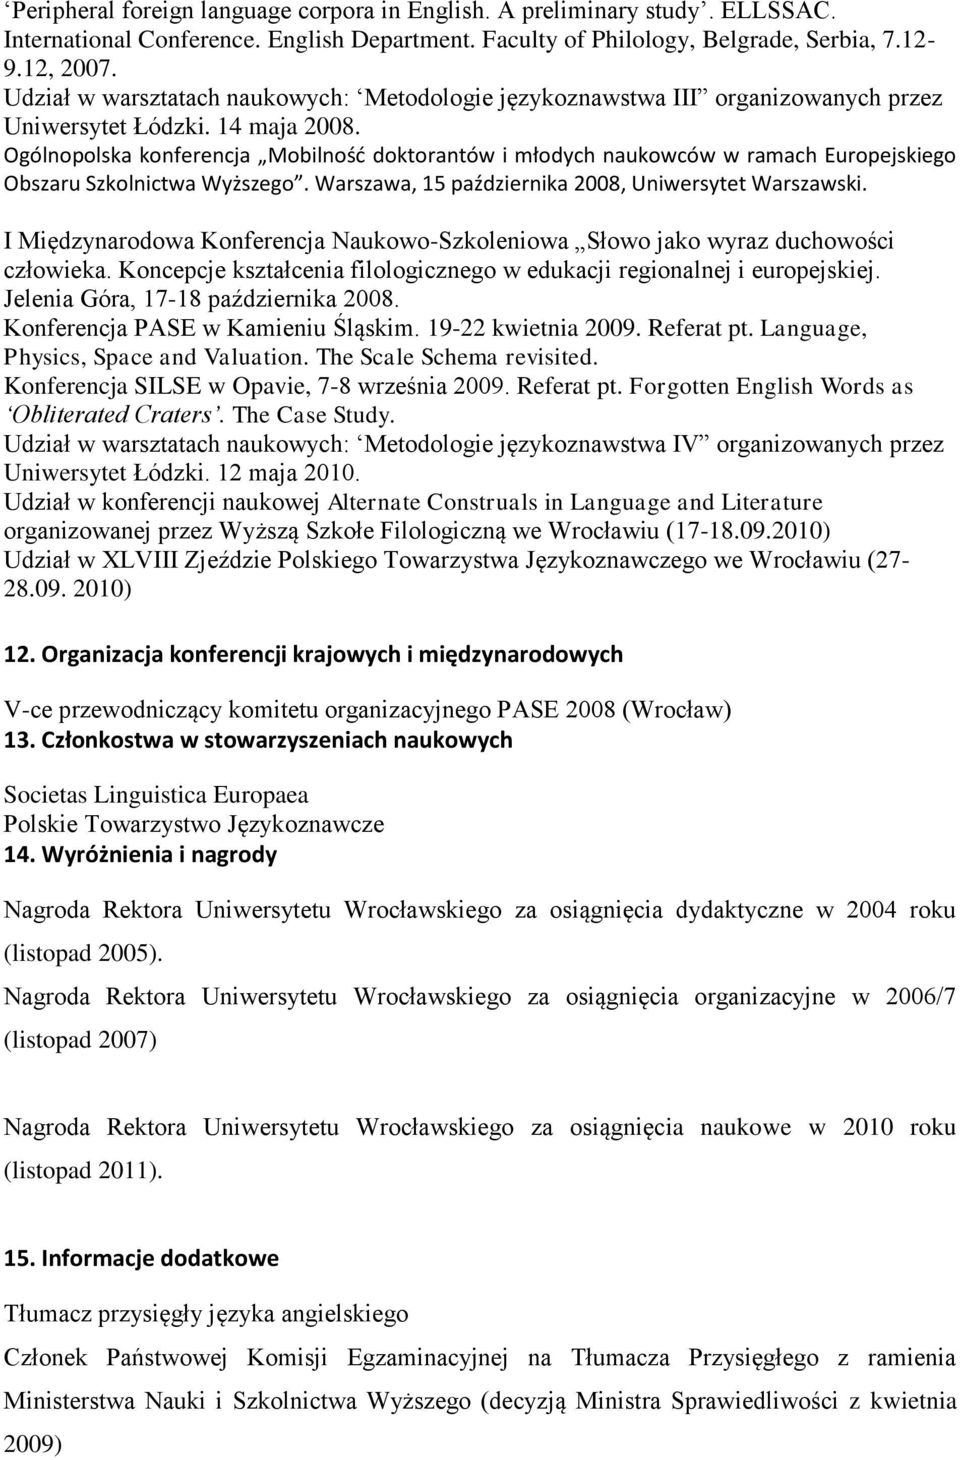 Ogólnopolska konferencja Mobilność doktorantów i młodych naukowców w ramach Europejskiego Obszaru Szkolnictwa Wyższego. Warszawa, 15 października 2008, Uniwersytet Warszawski.